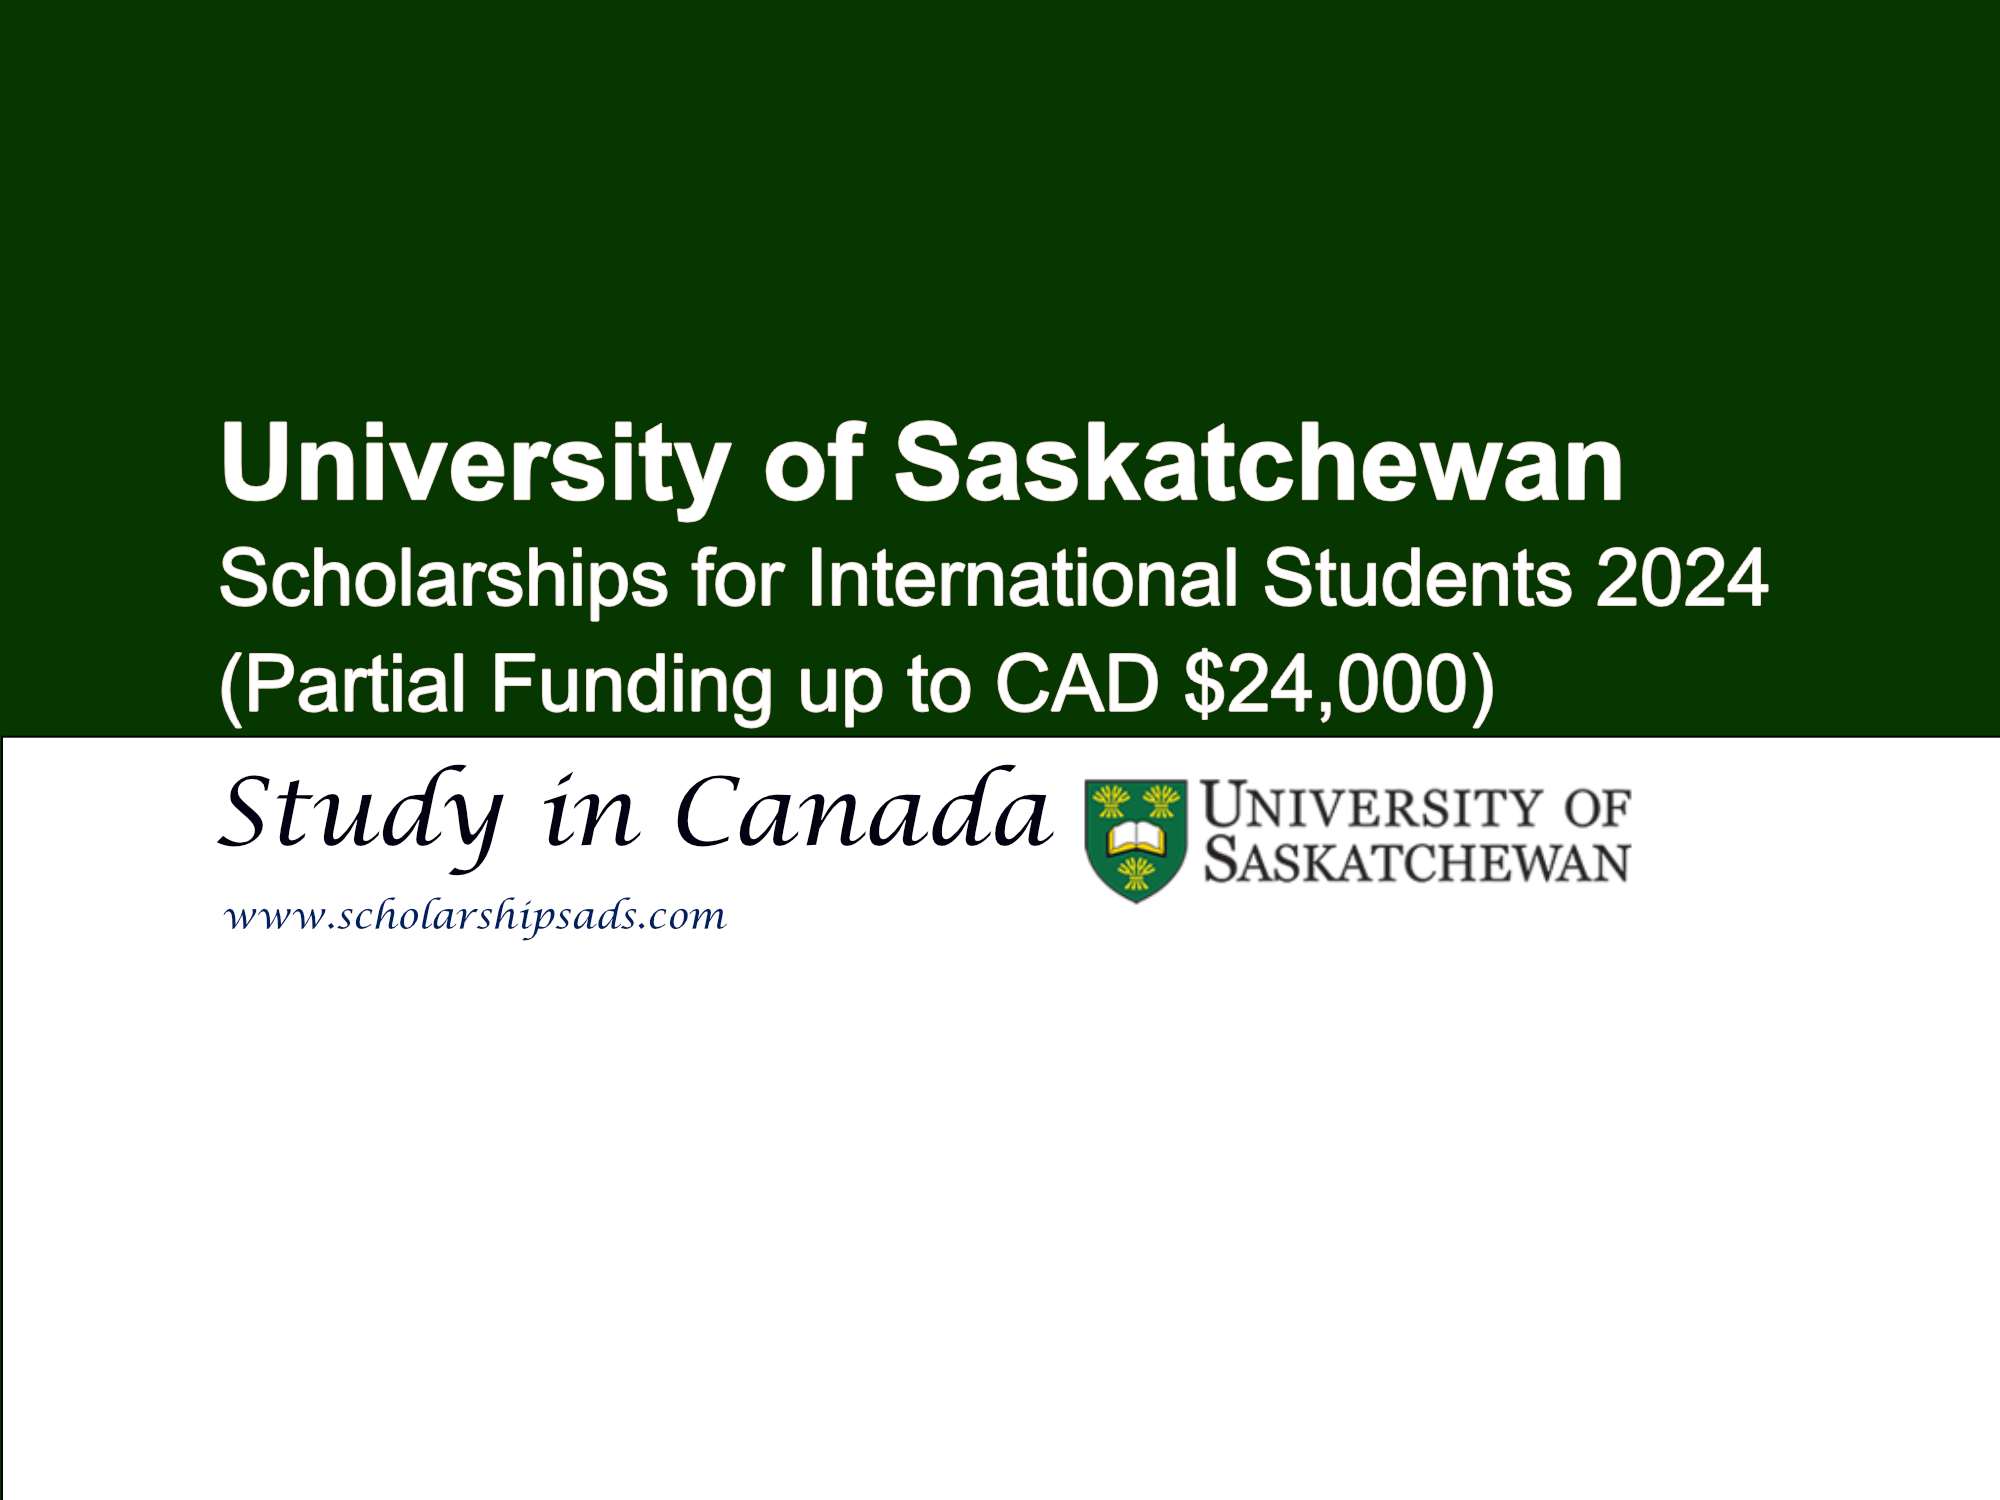  University of Saskatchewan Scholarships. 